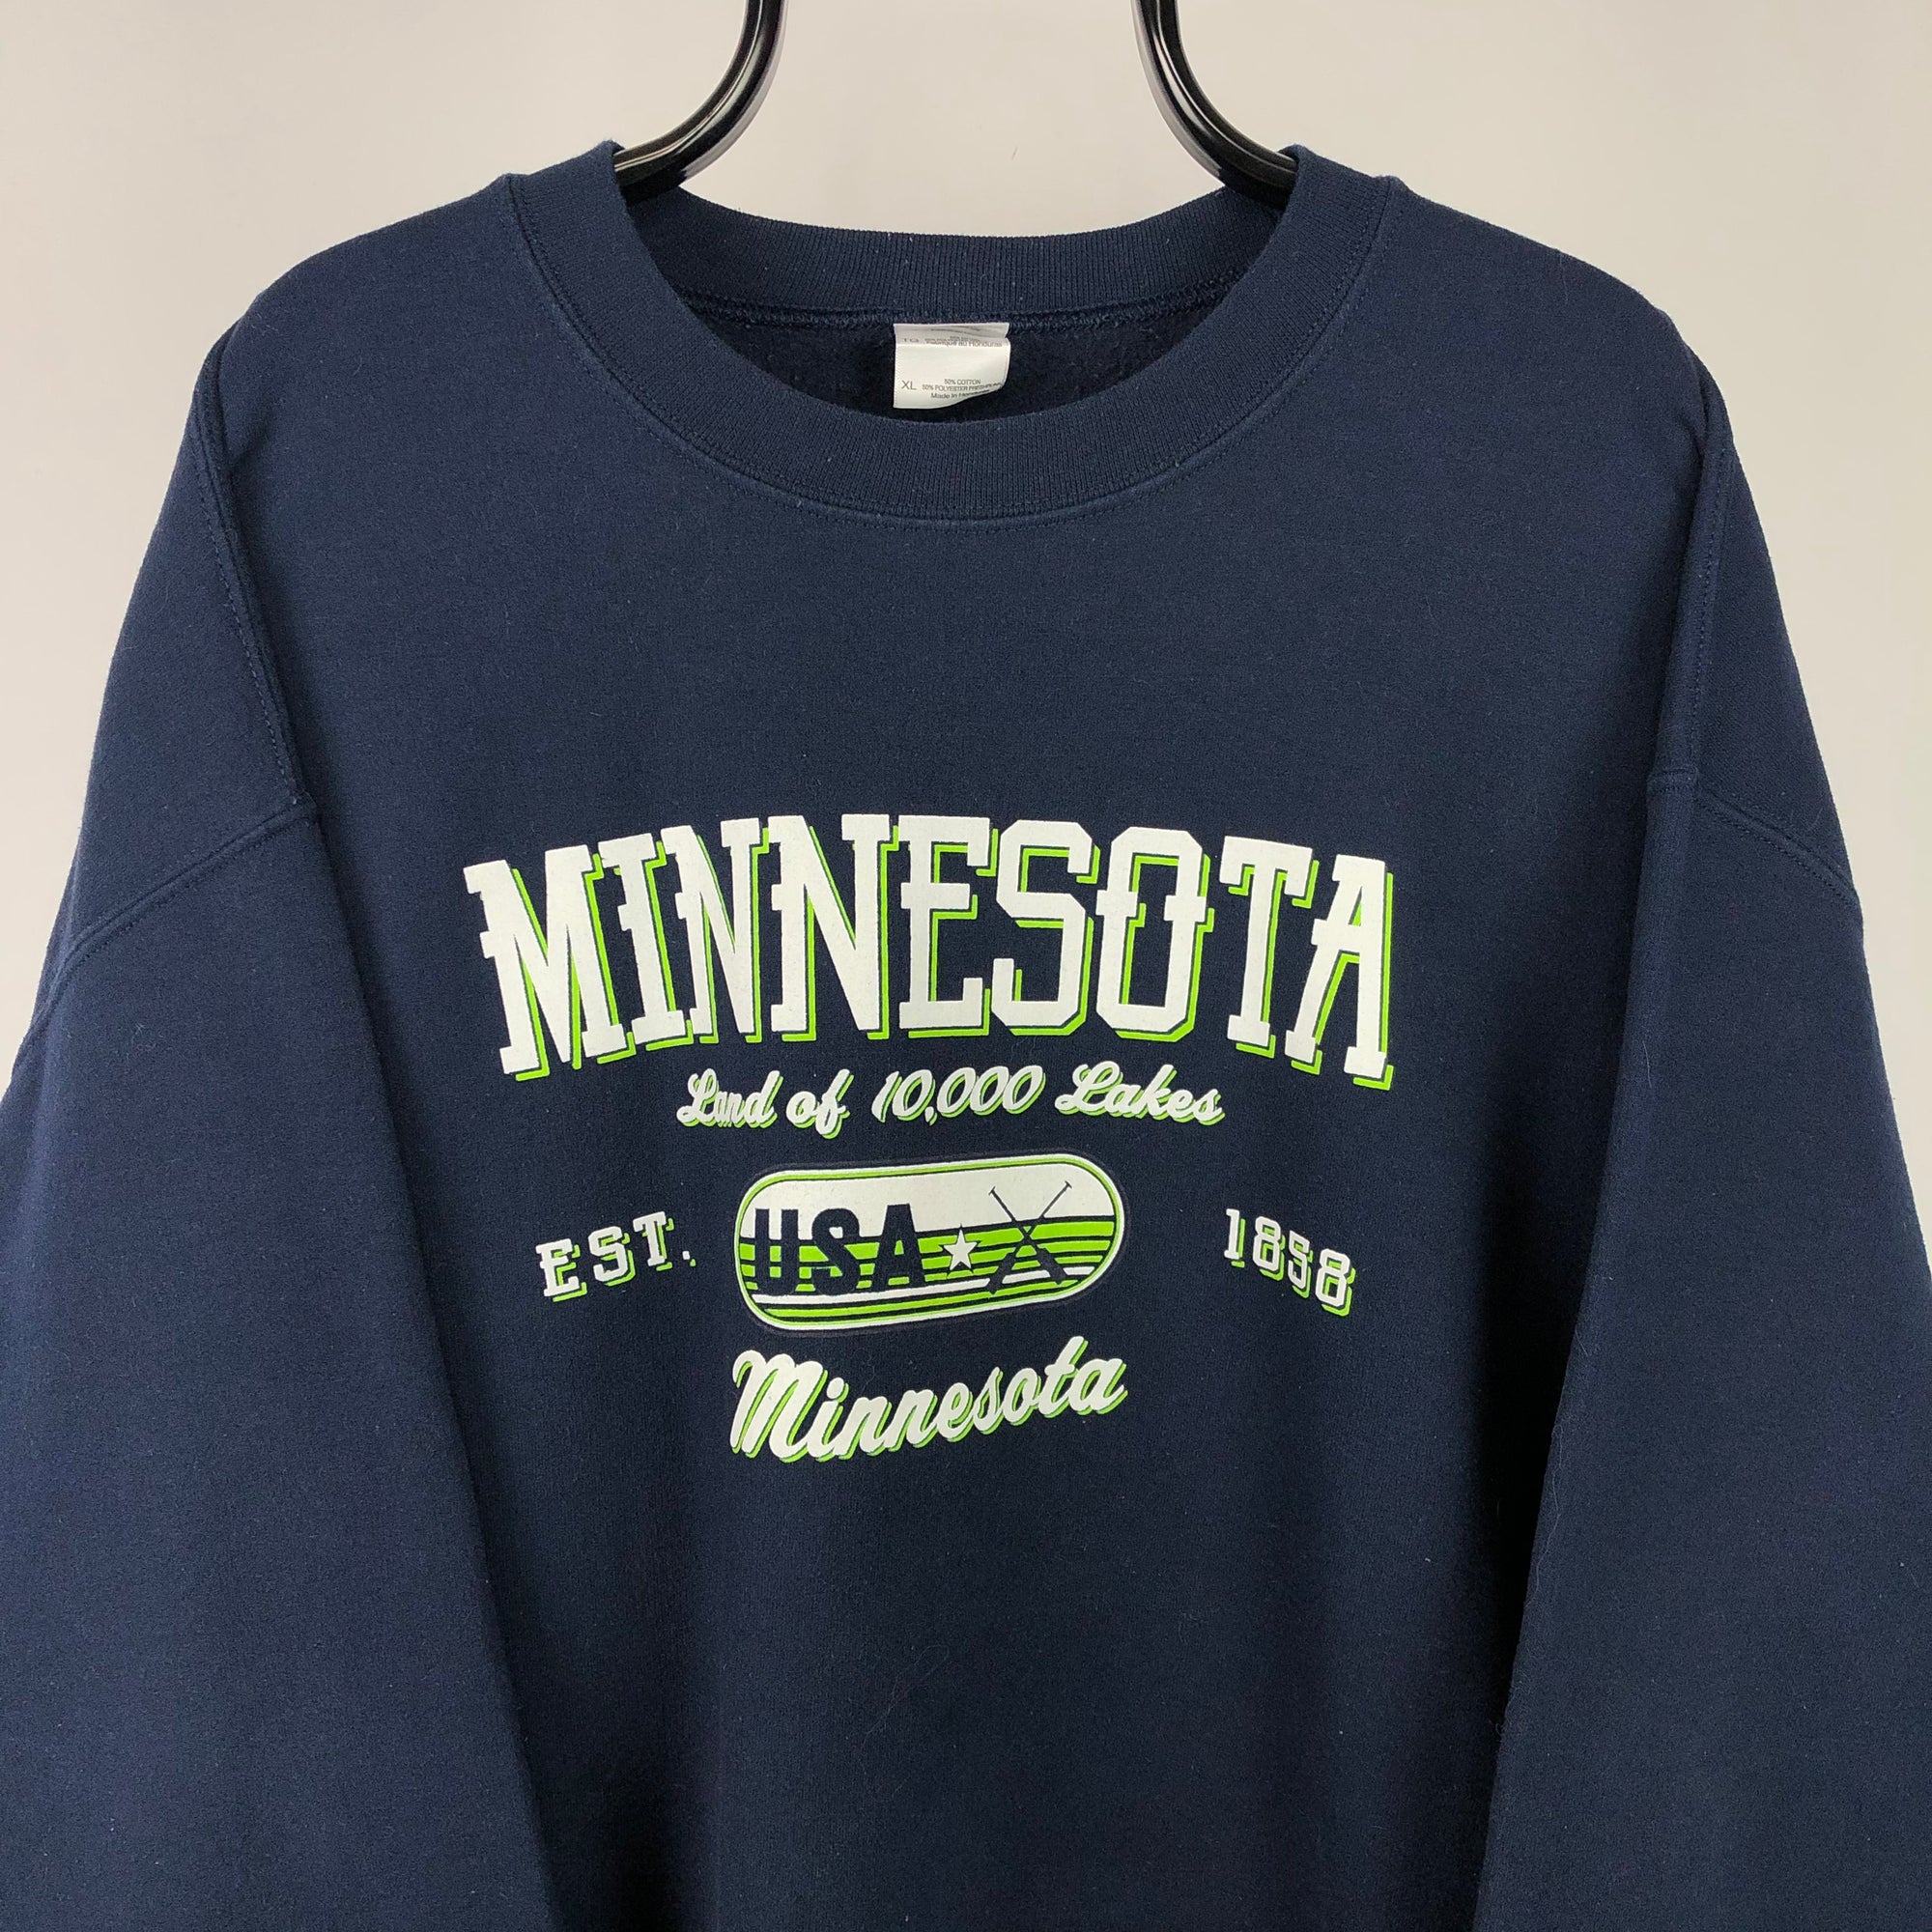 Vintage Minnesota College Sweatshirt in Navy - Men's Large/Women's XL